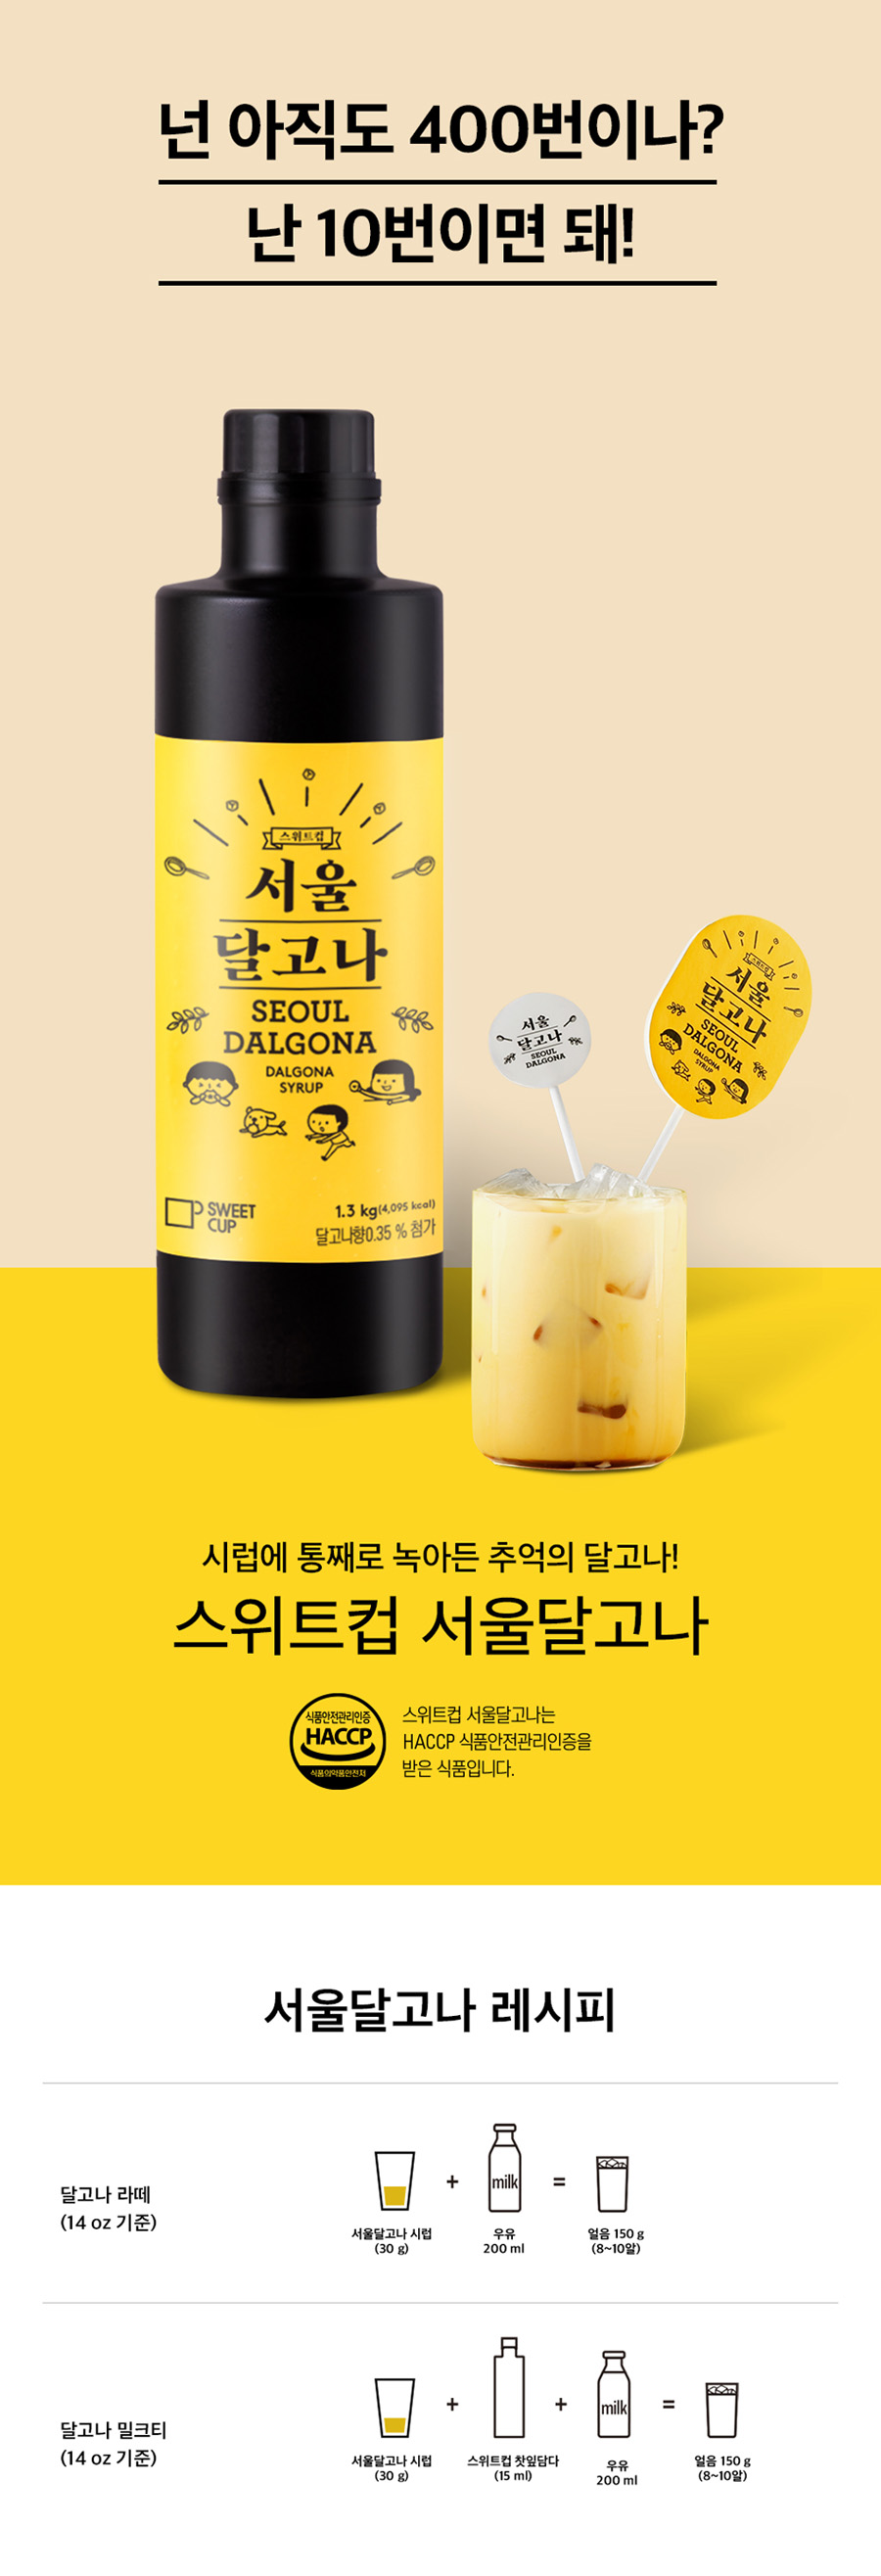 Syrup_SeoulDalgona1.3kg